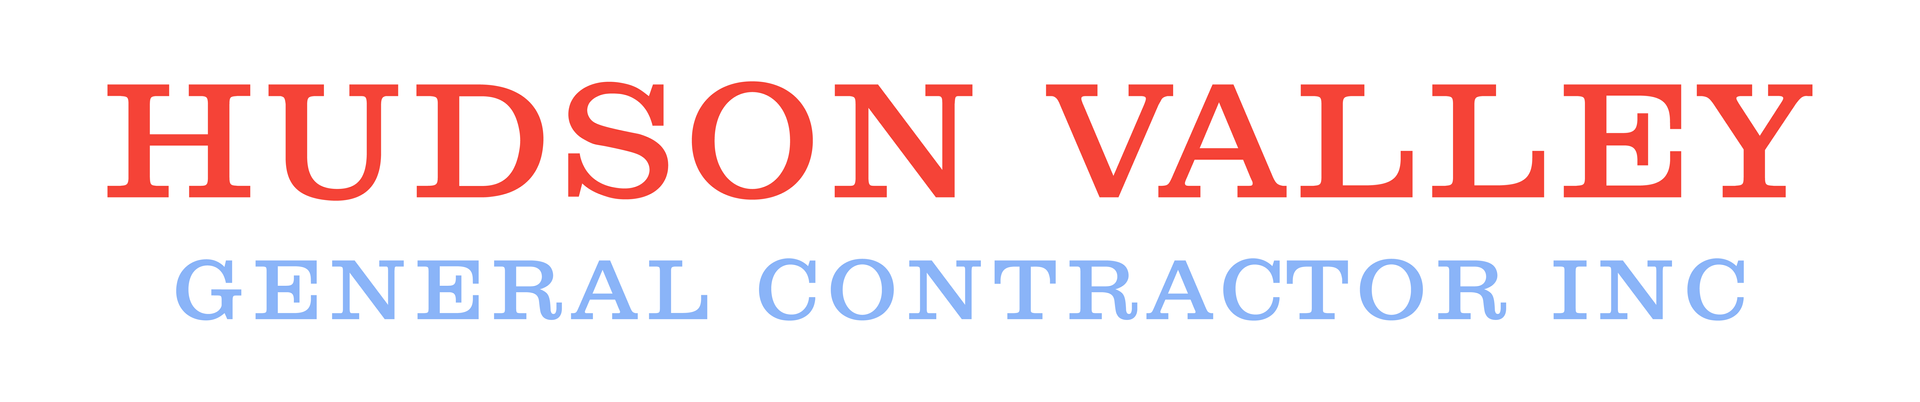 Hudson Valley General Contractors